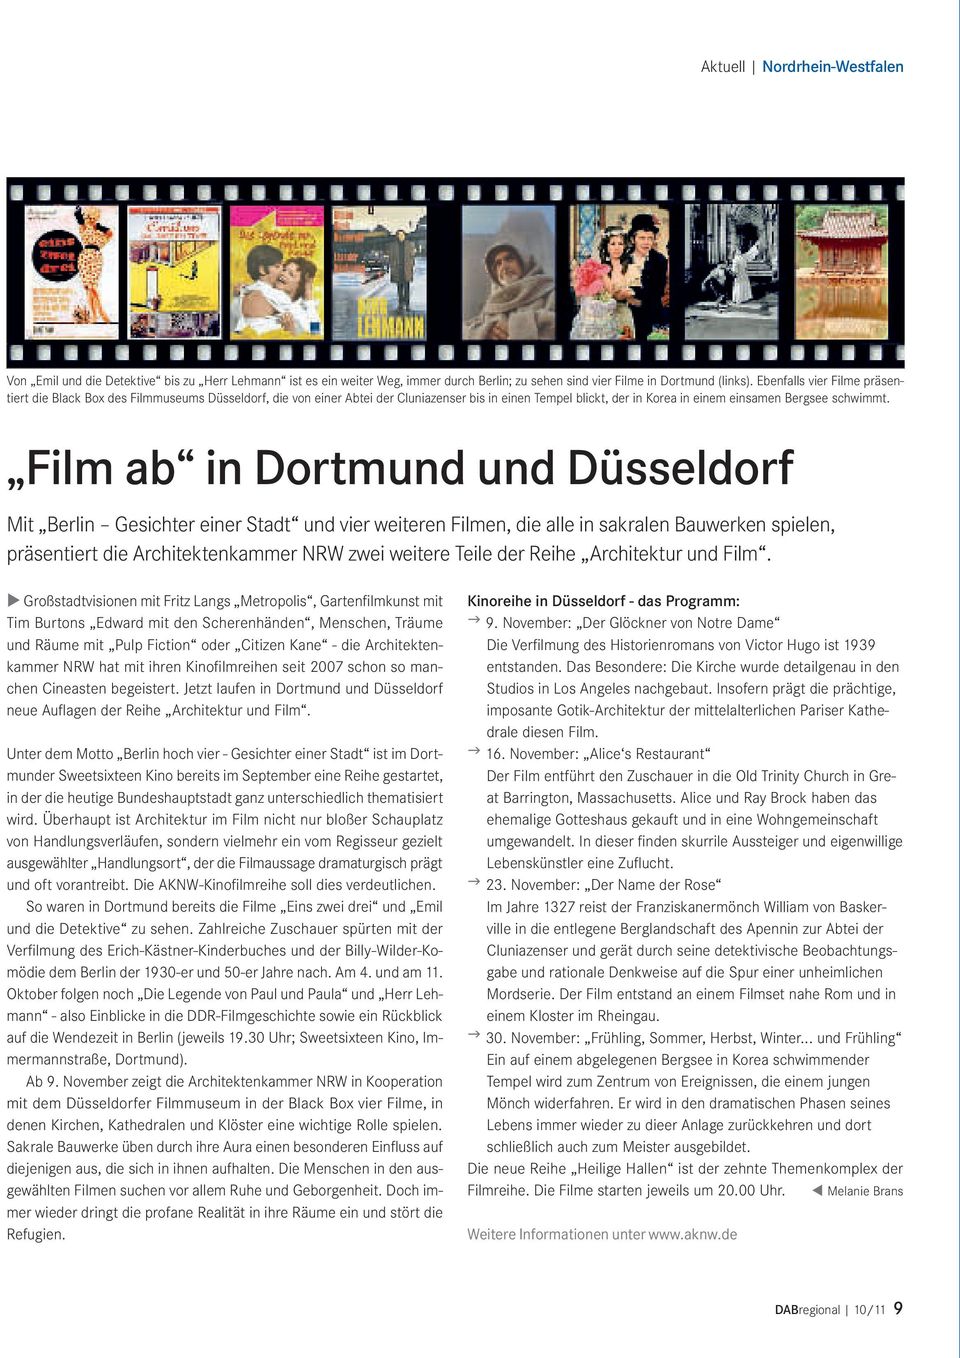 Film ab in Dortmund und Düsseldorf Mit Berlin Gesichter einer Stadt und vier weiteren Filmen, die alle in sakralen Bauwerken spielen, präsentiert die Architektenkammer NRW zwei weitere Teile der